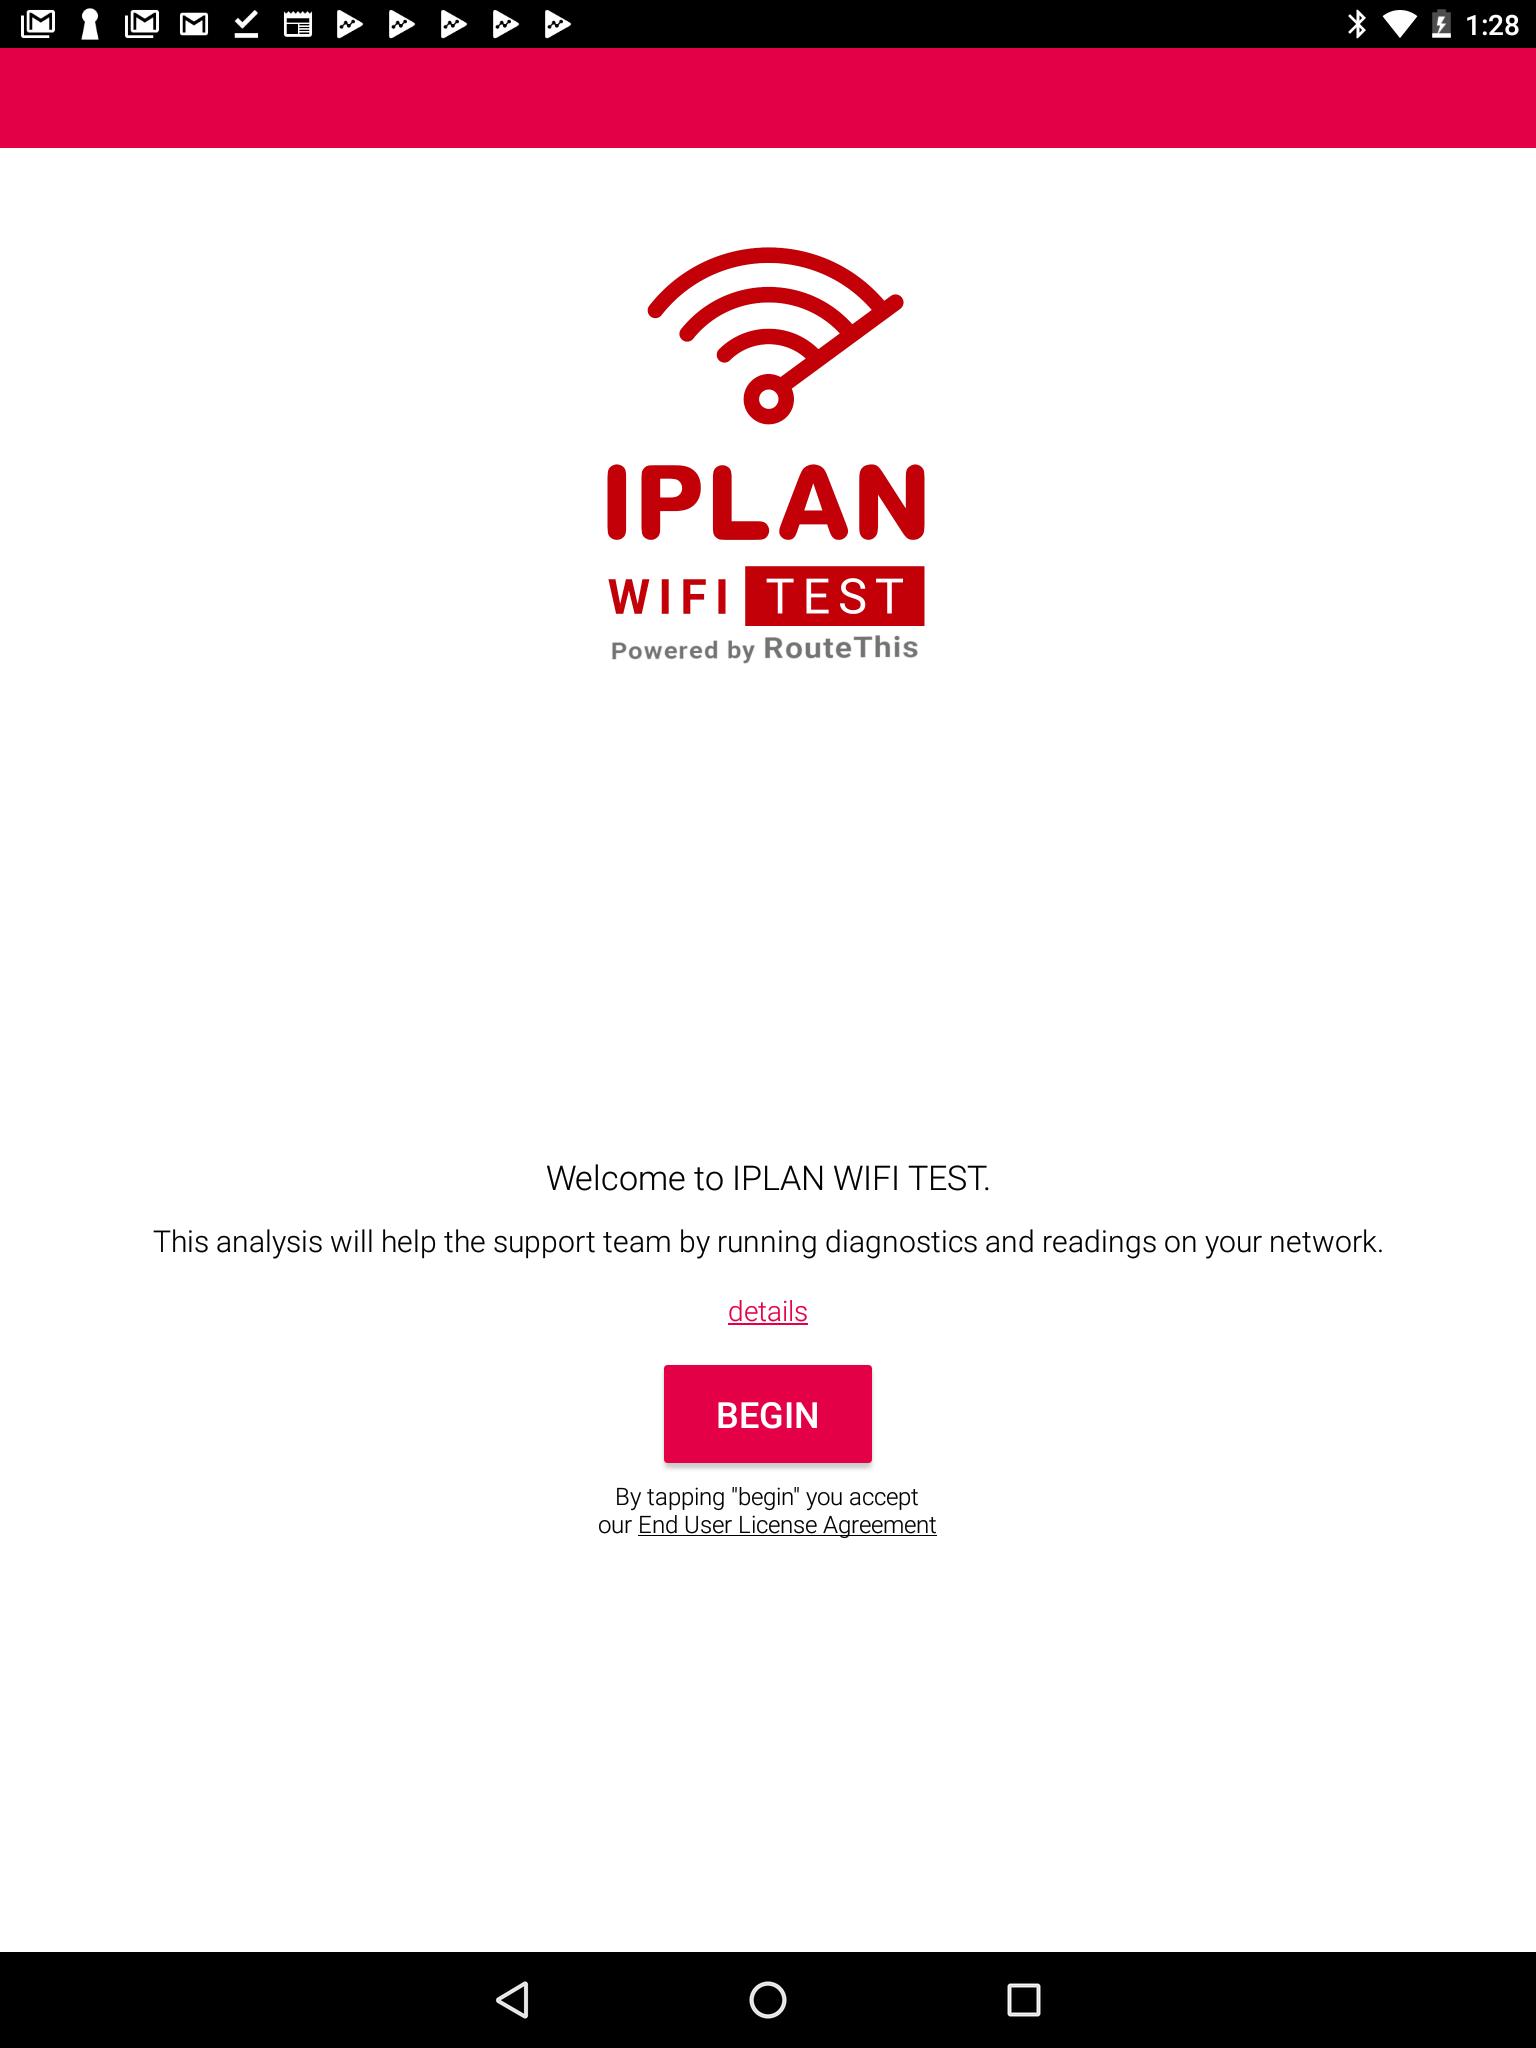 IPLAN WIFI TEST 1.21.03.31 Screenshot 5